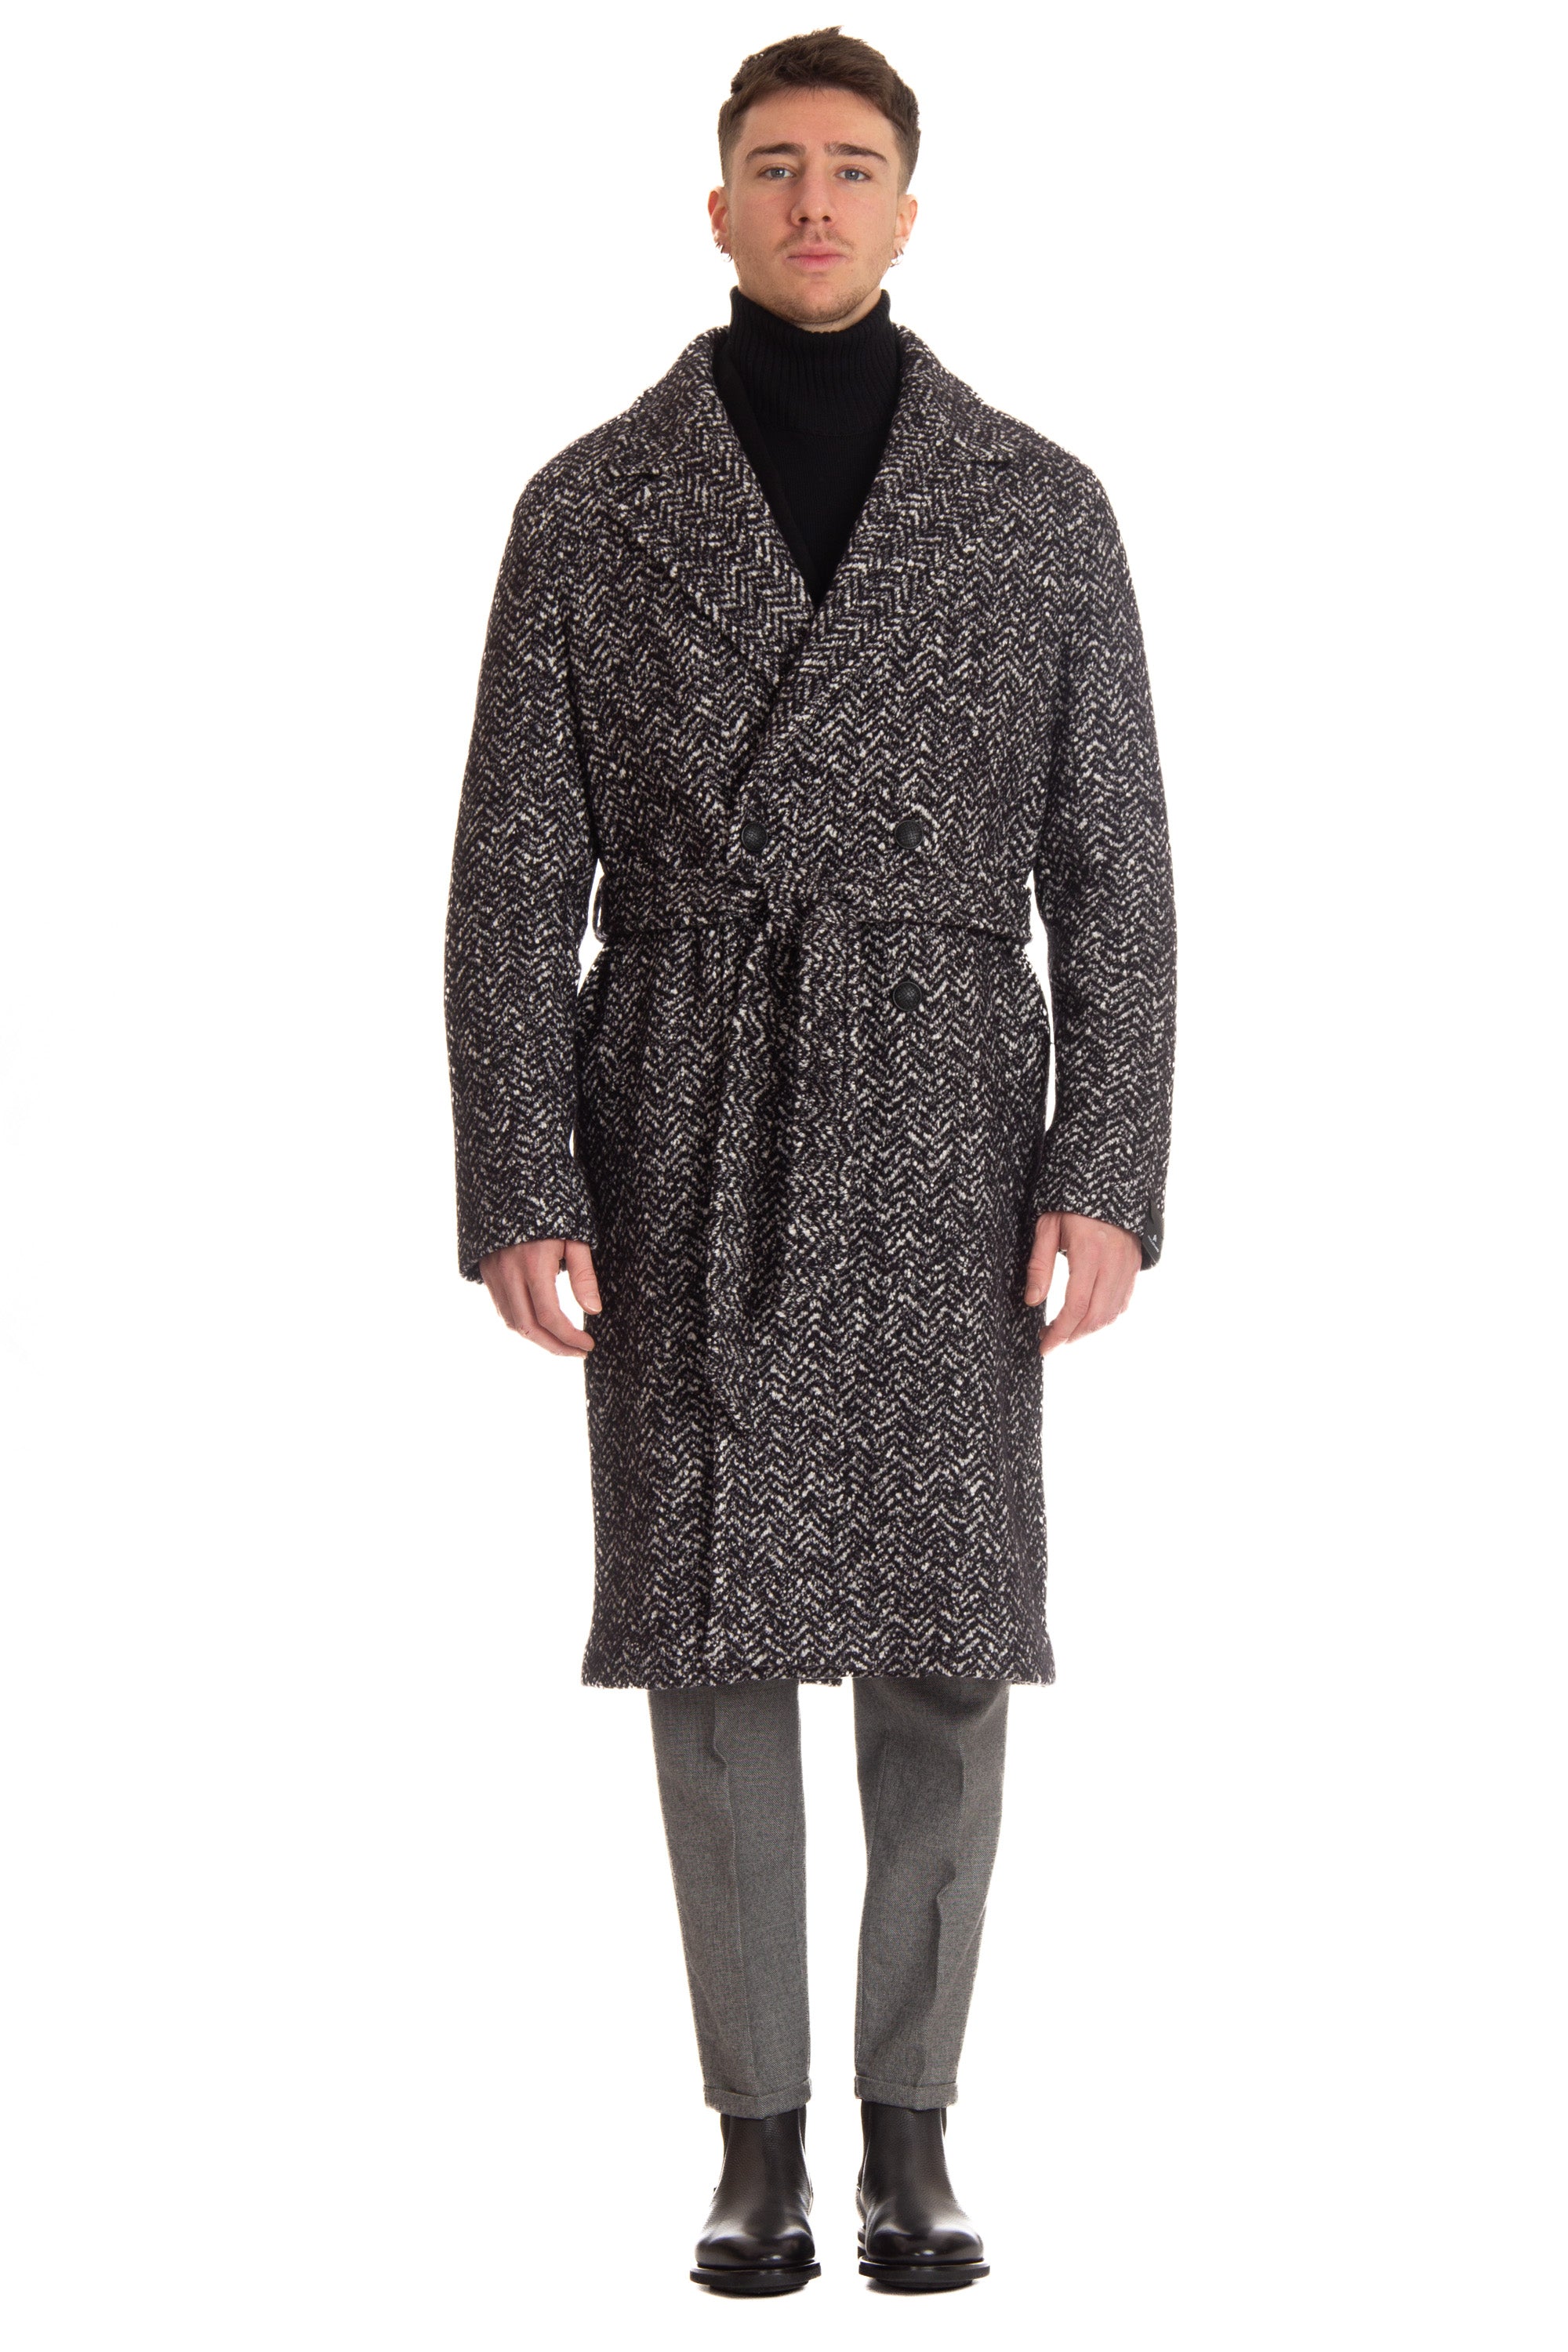 Cappotto doppiopetto in lana-cotone mod. Royce